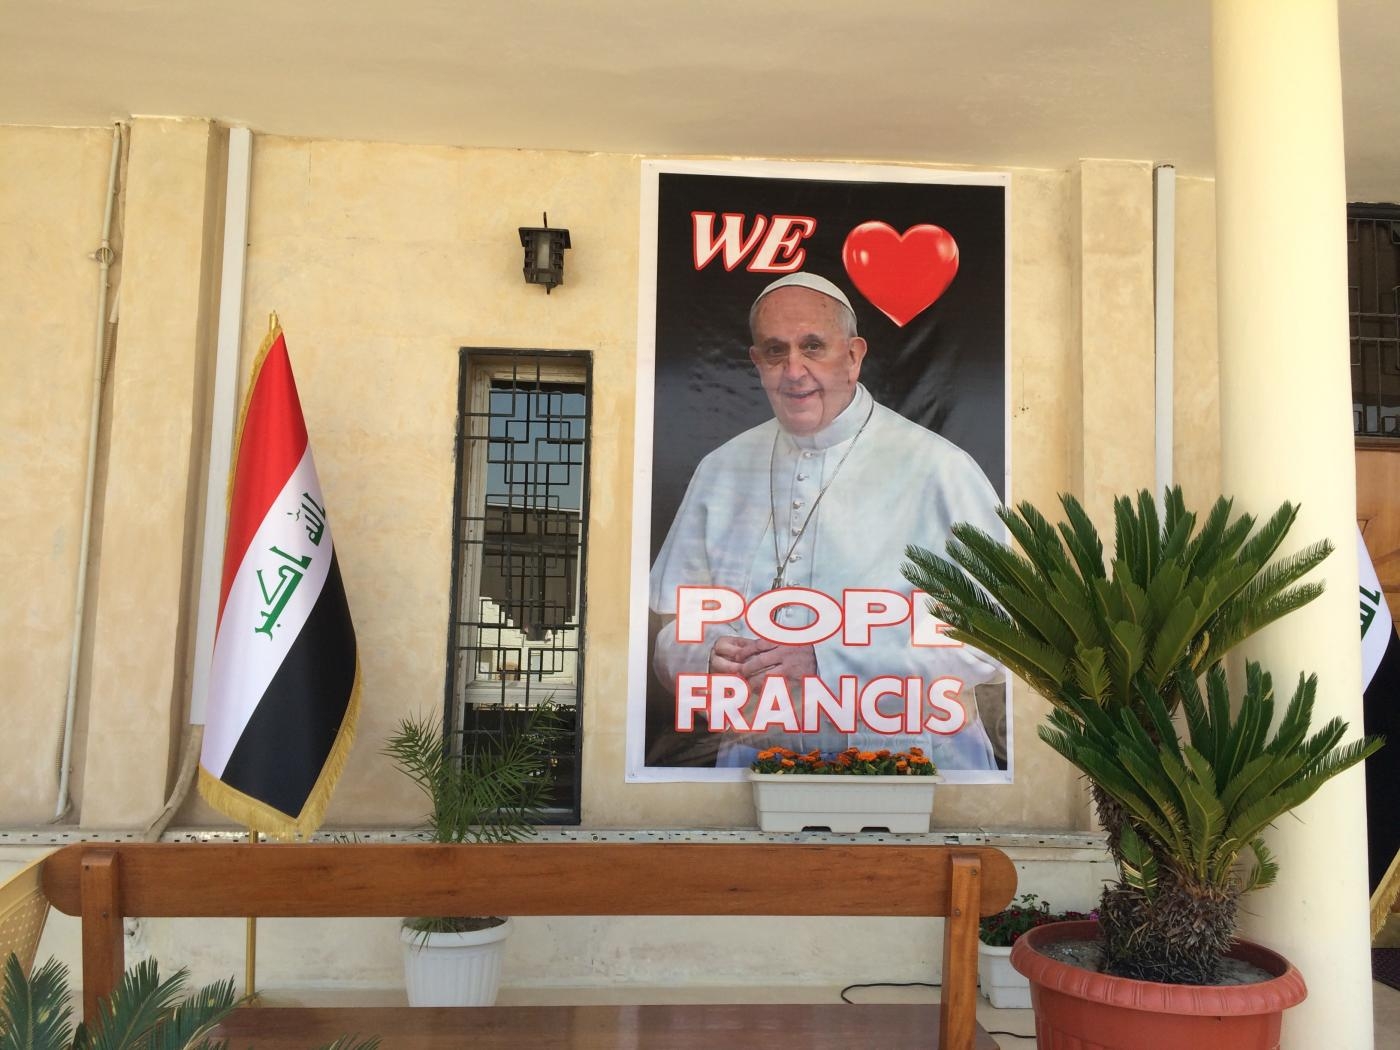 Des posters ornent le fronton de l’église Mar Youssef de Bagdad, où le pape François présidera une messe le 6 mars 2021 (MEE/Tom Westcott)